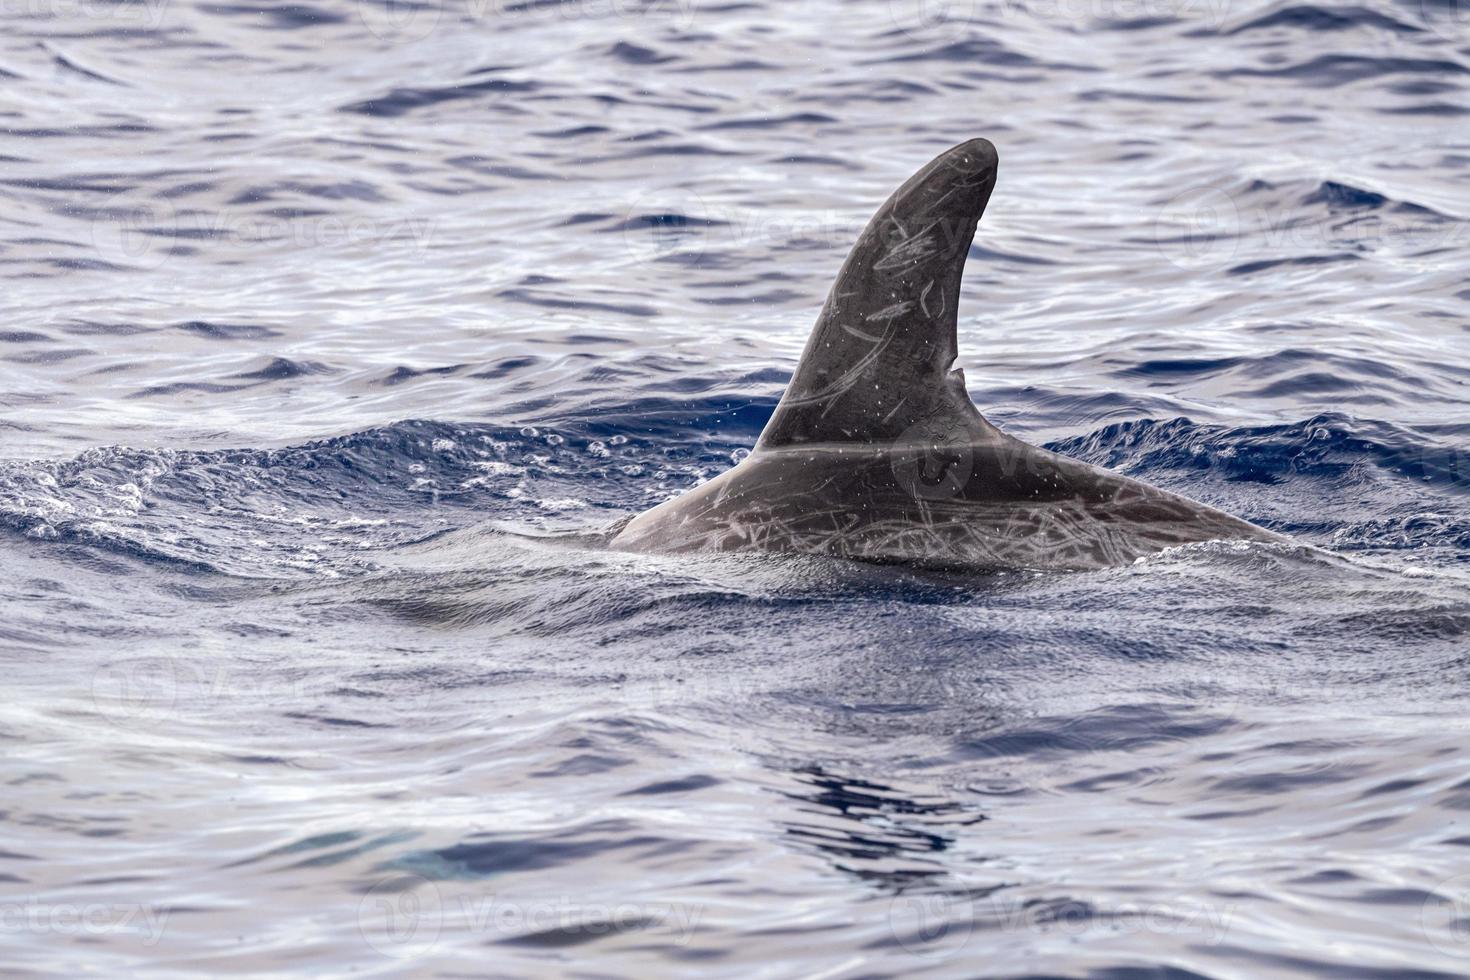 risso delfino grampus nel mediterraneo foto